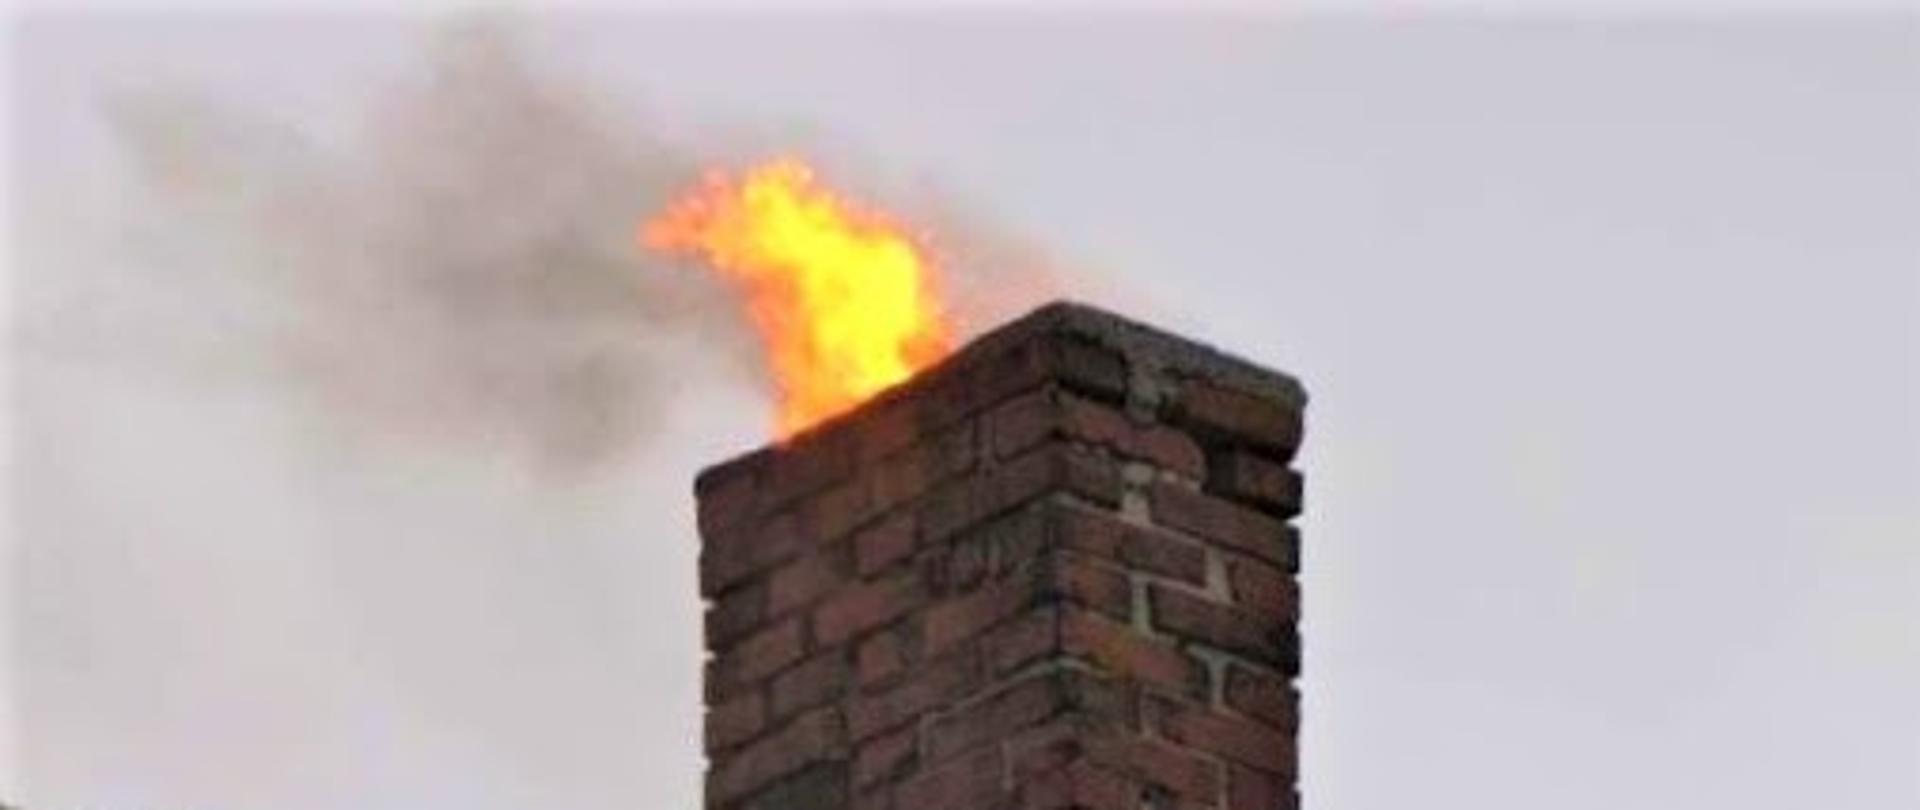 Na zdjęciu widoczny komin z którego wydobywa się ogień.